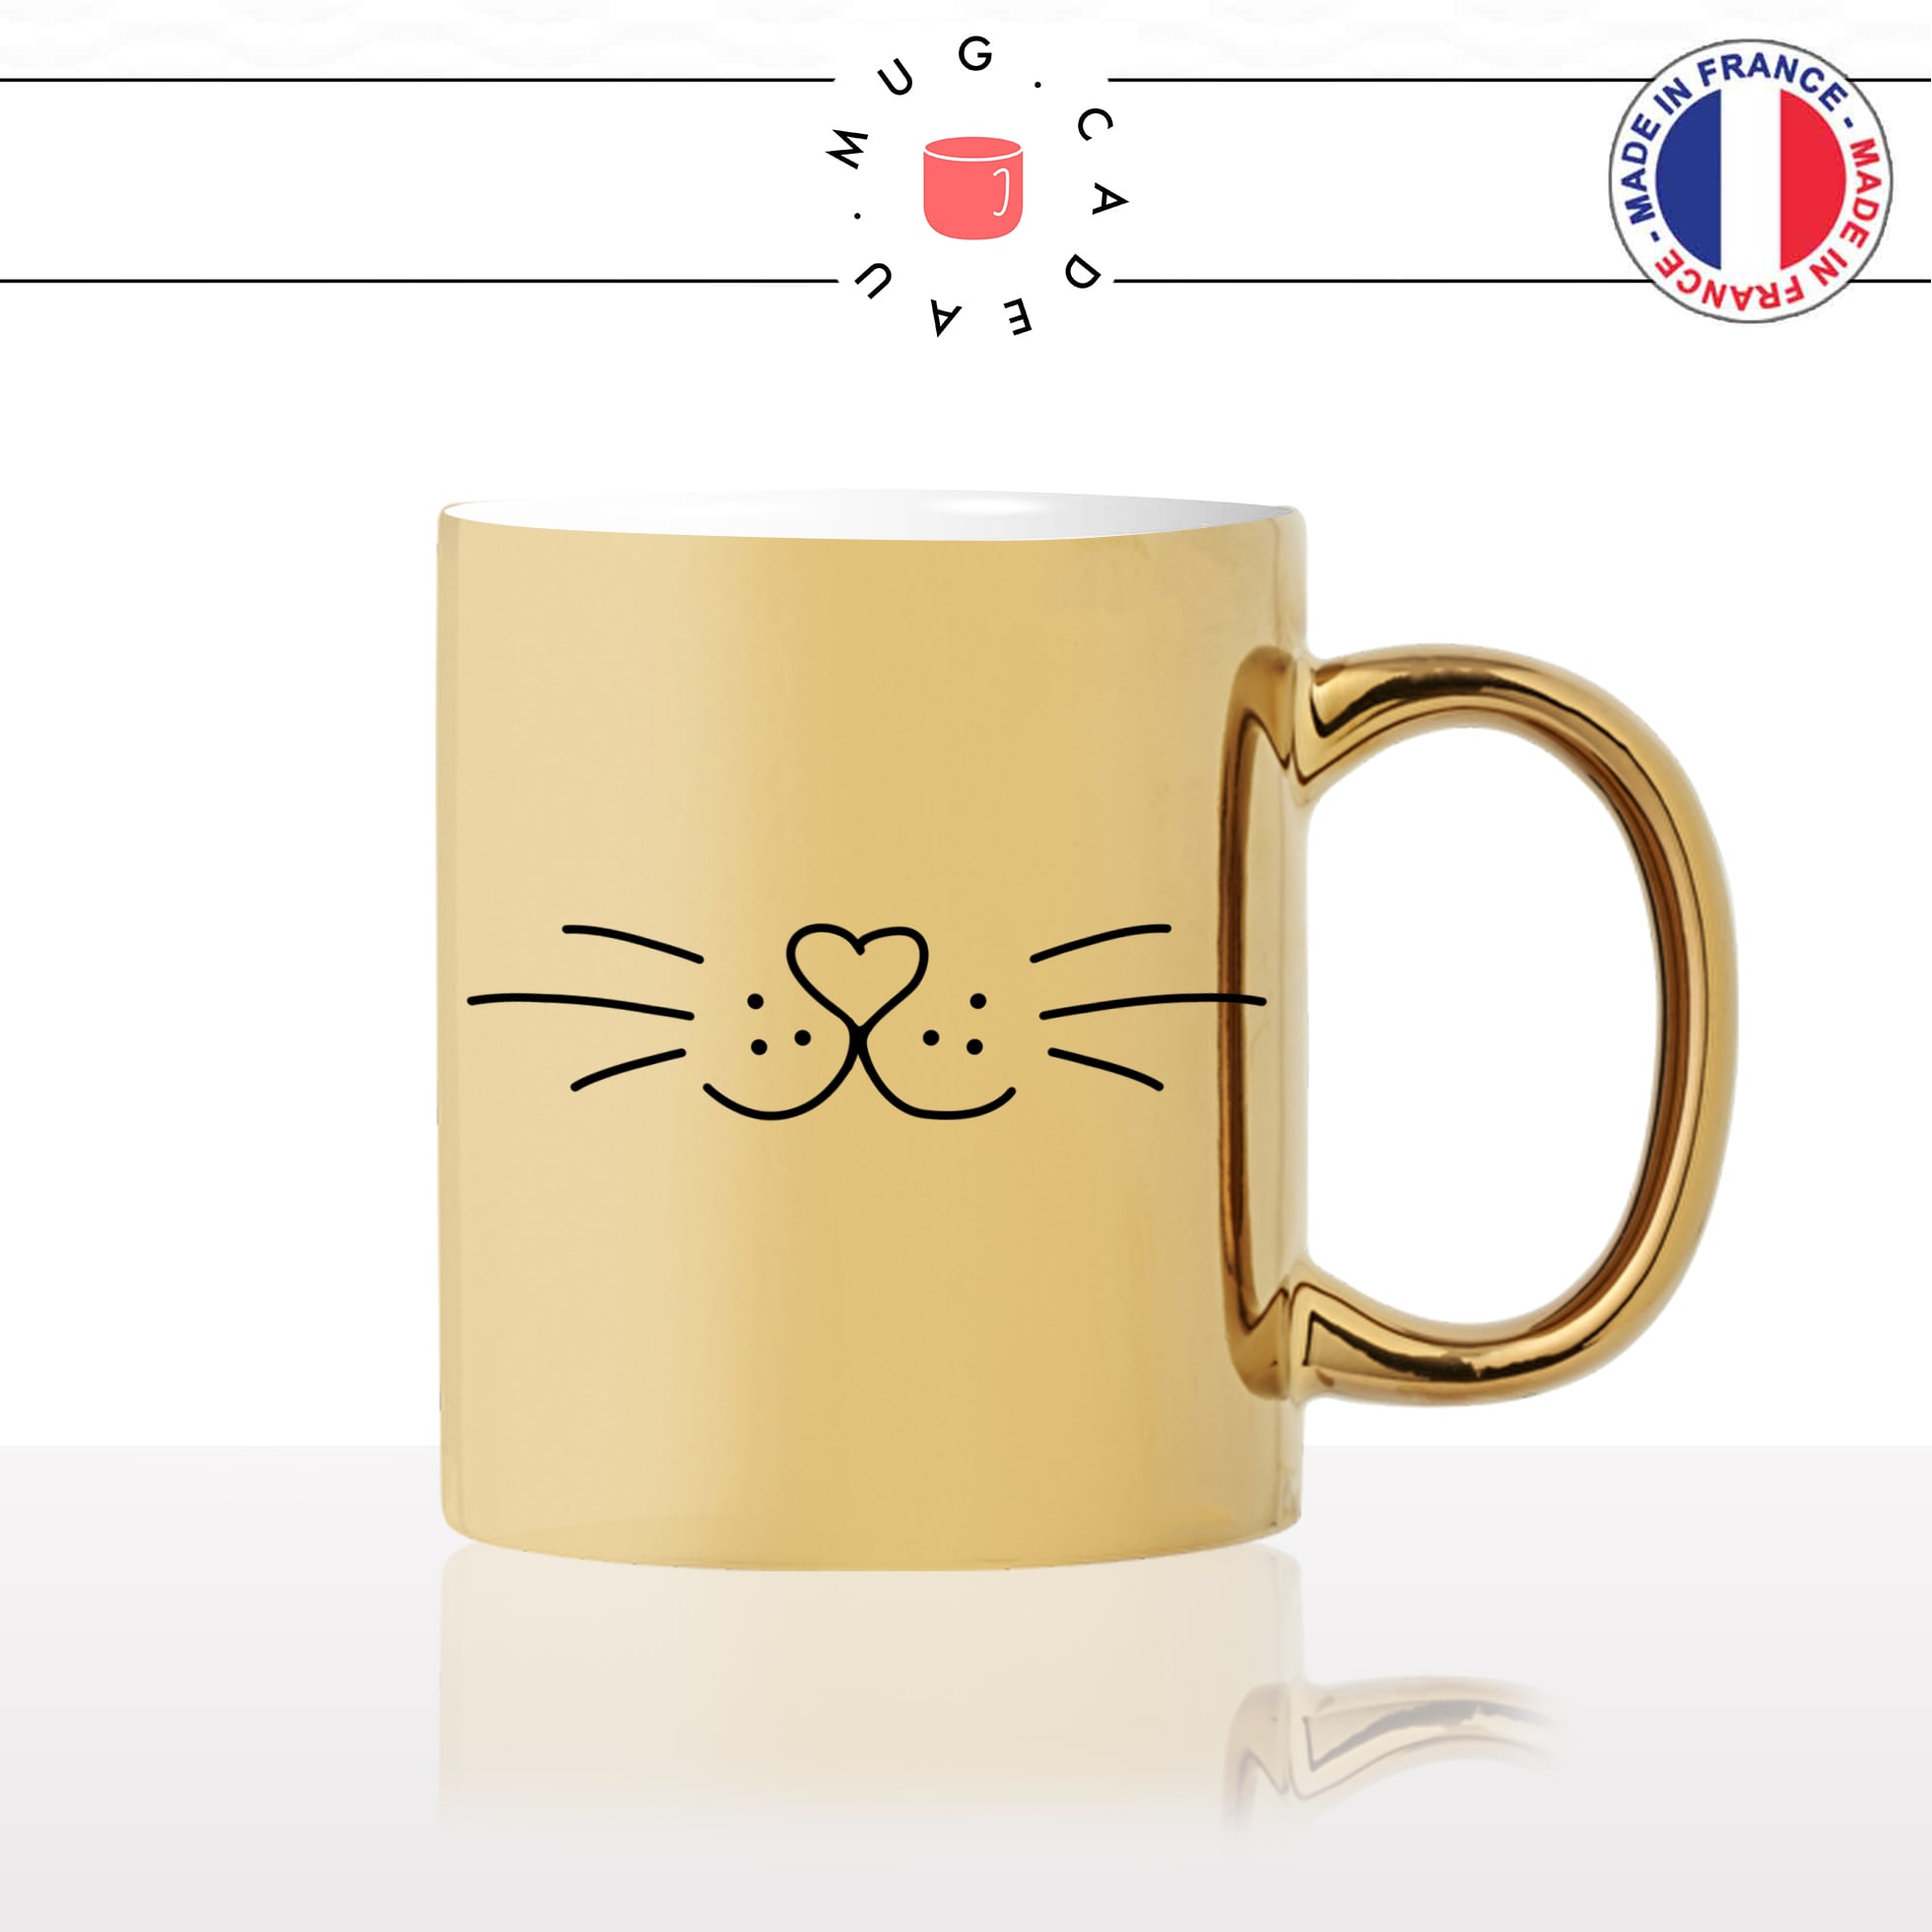 mug-tasse-or-doré-moustache-truffe-chats-animal-chaton-dessin-noir-fun-café-thé-idée-cadeau-original-personnalisable-gold-personnalisée2-min